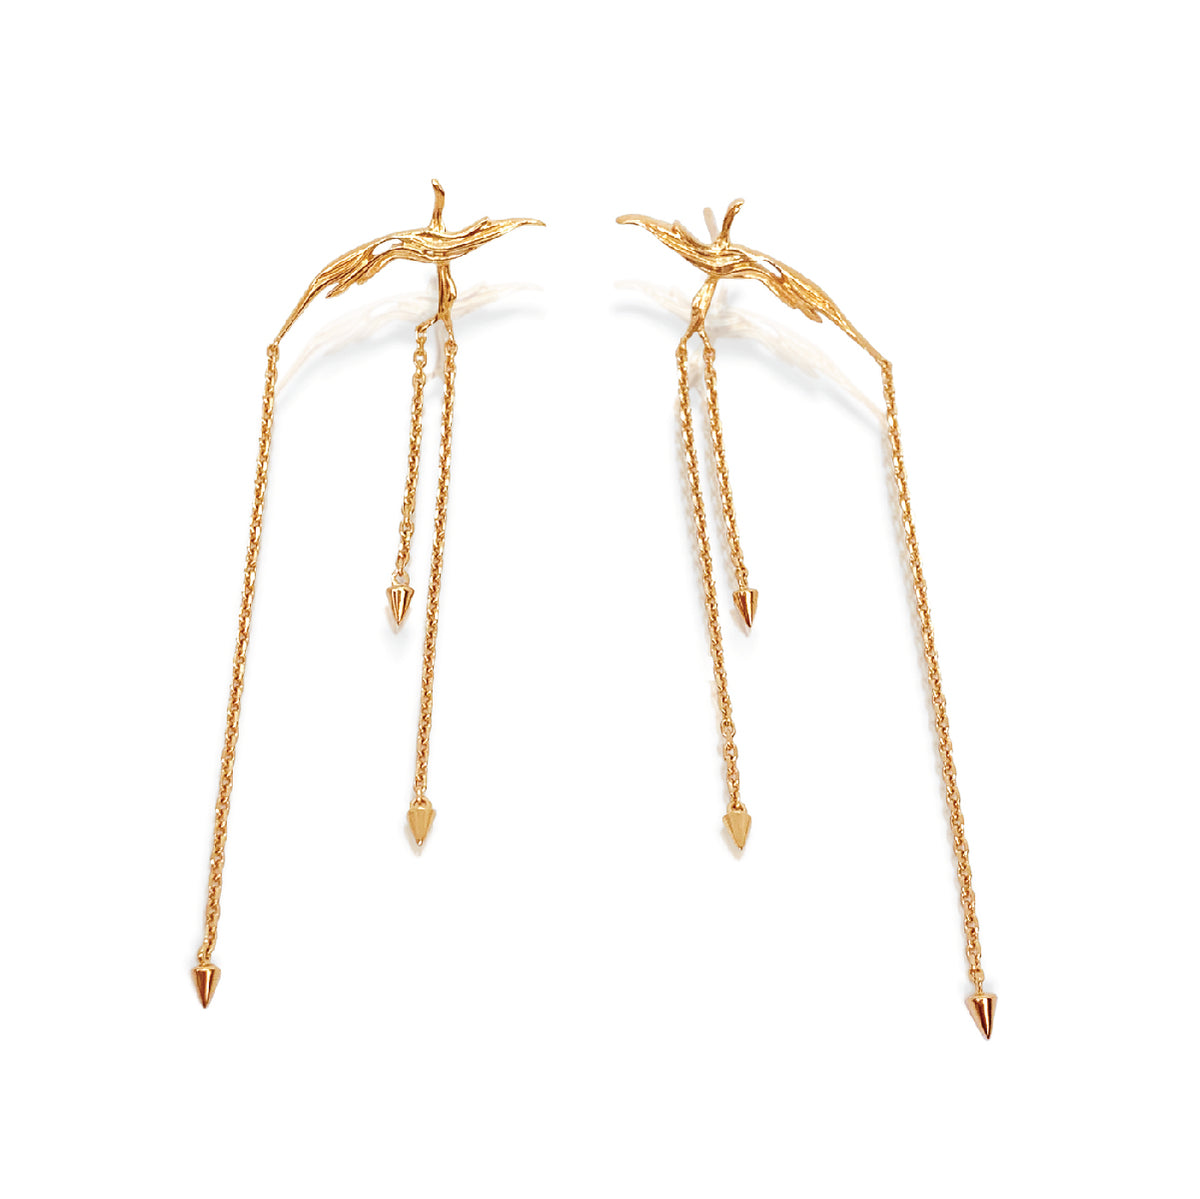 gold chandelier earrings